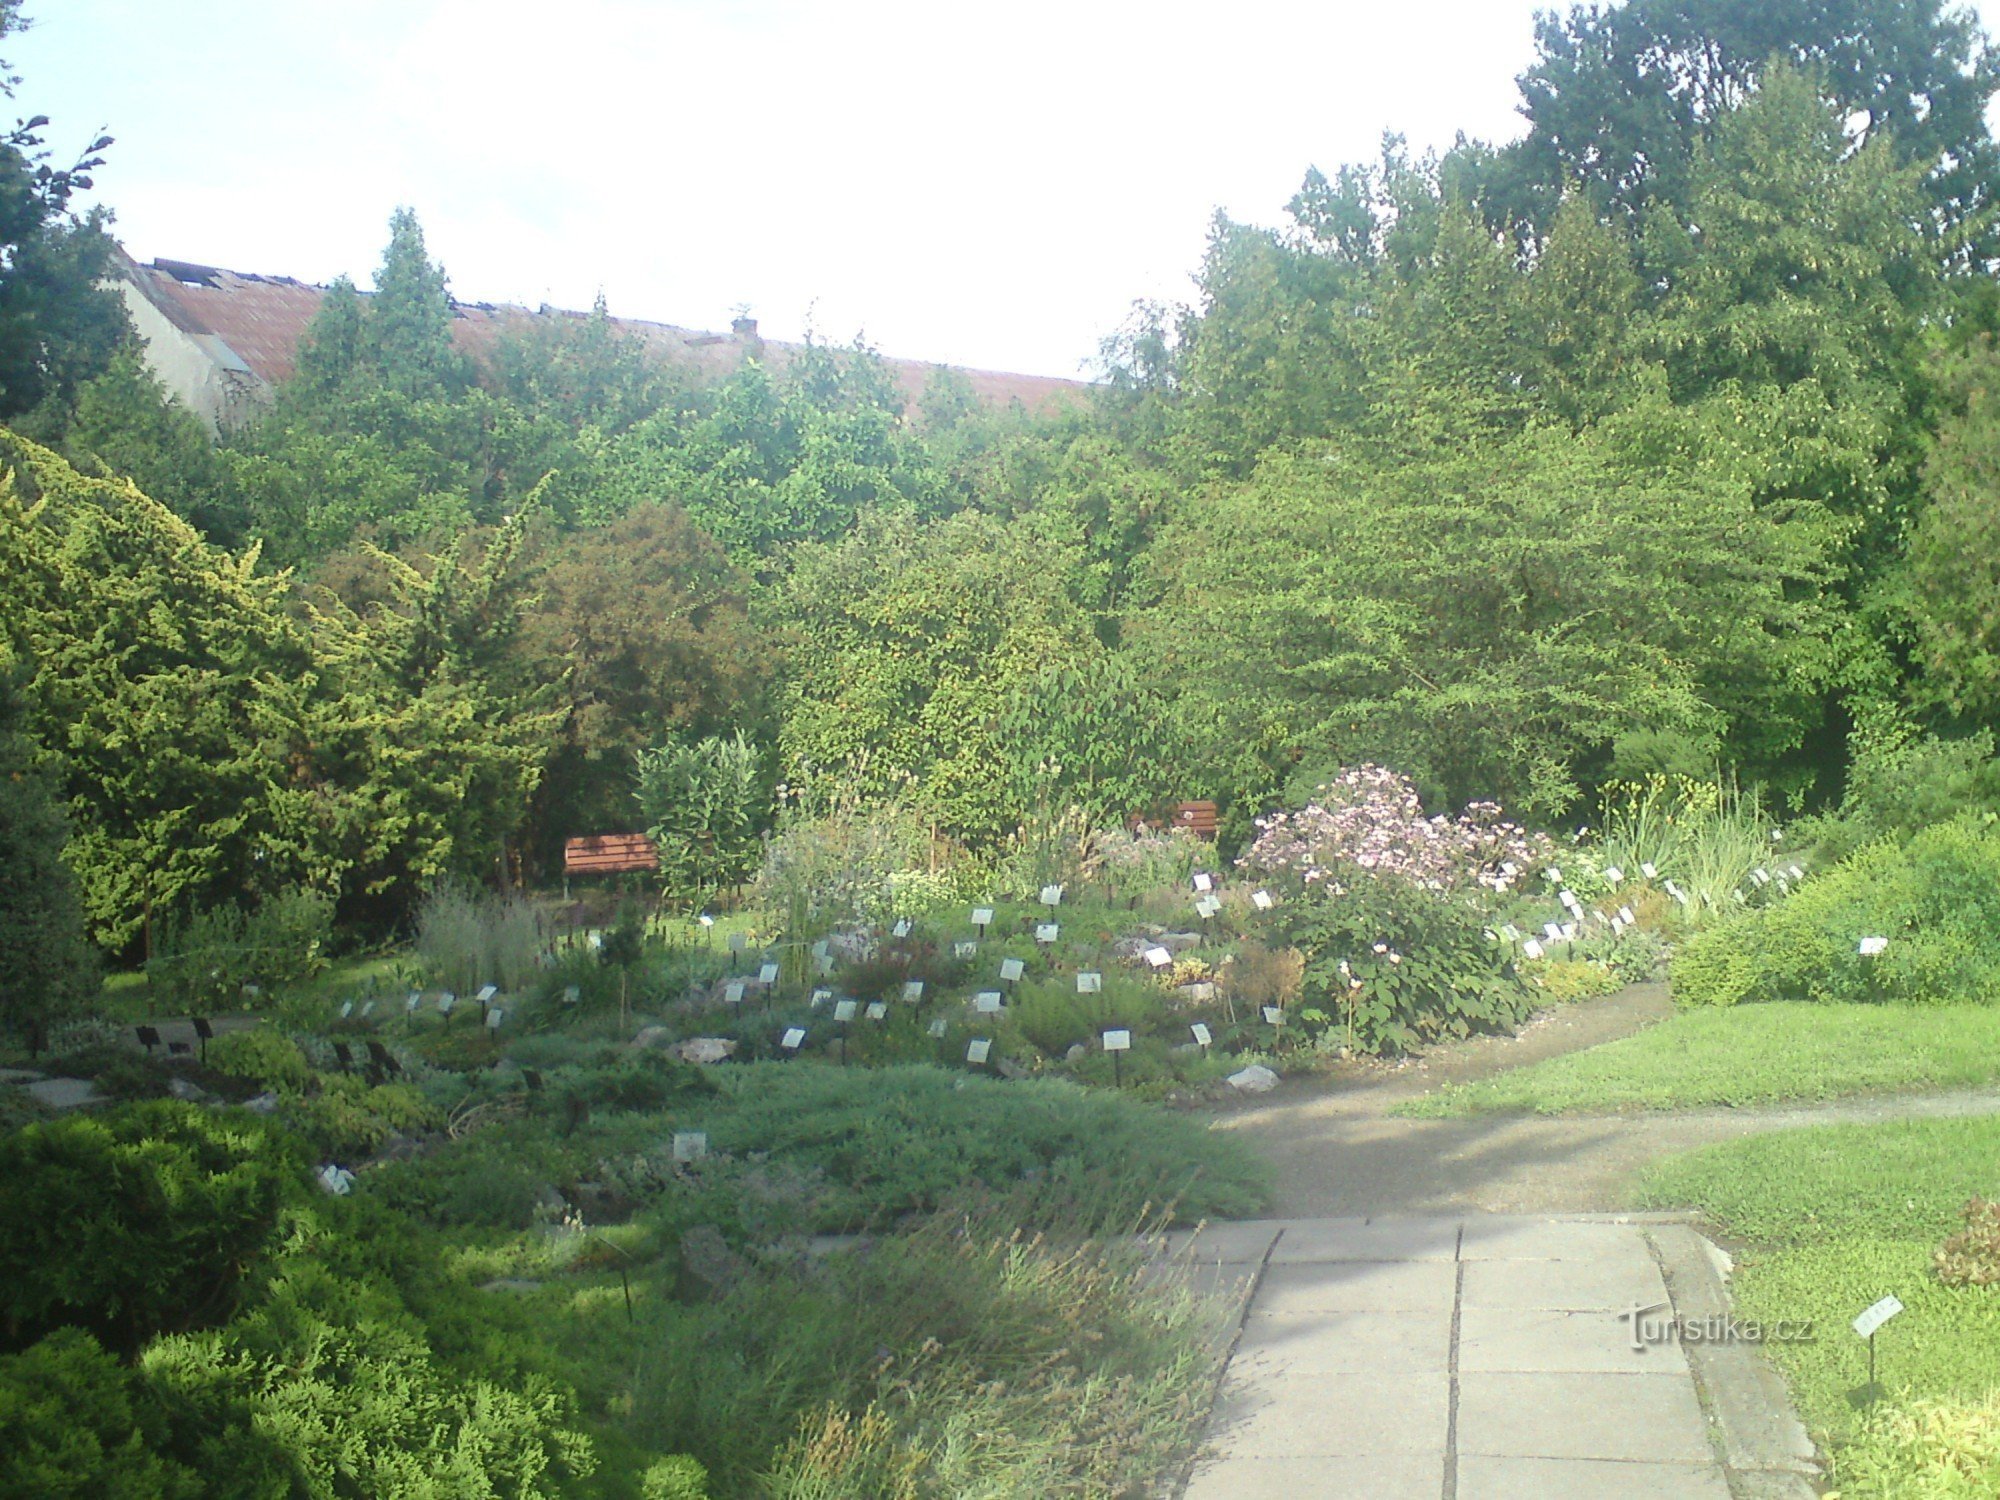 Botanical garden in Prostějov